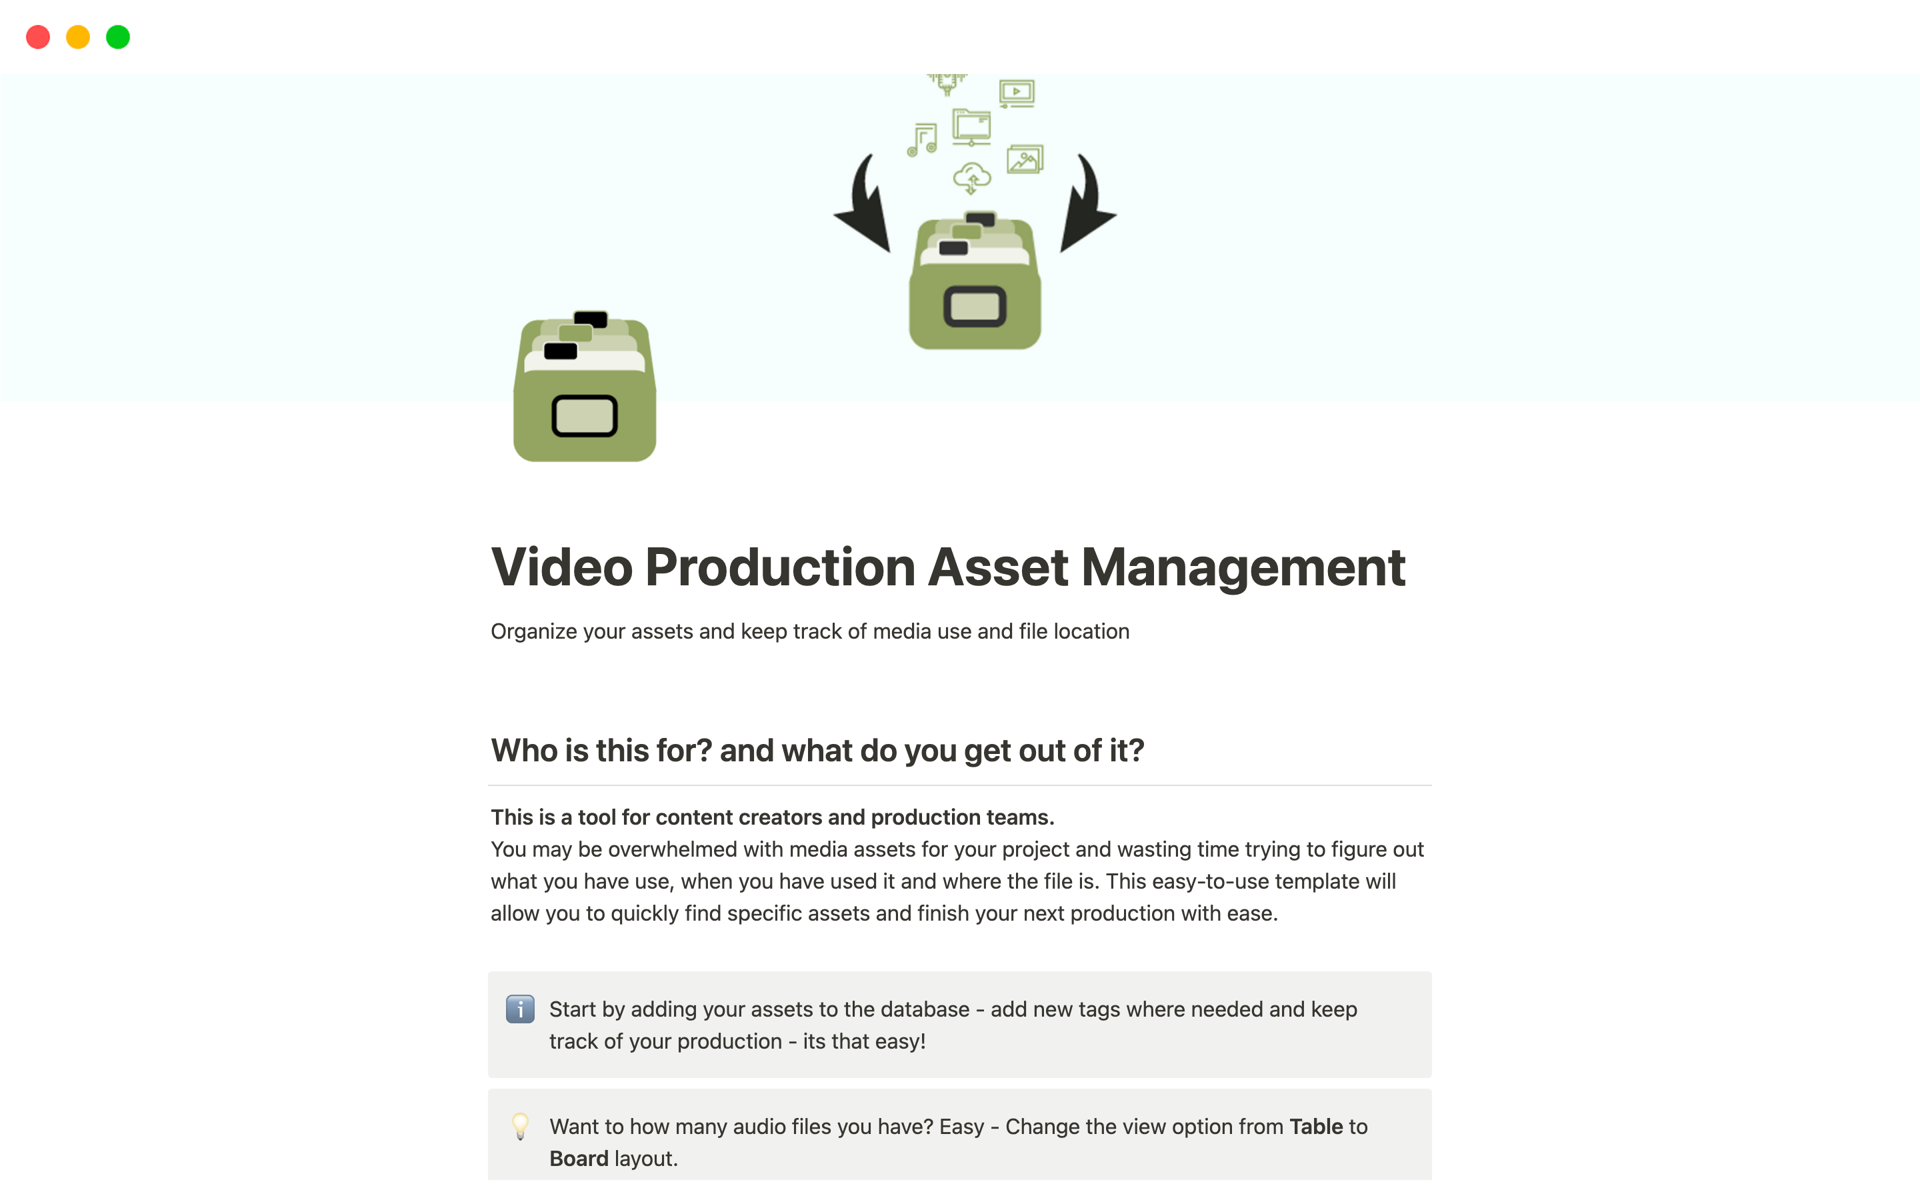 Vista previa de una plantilla para Video Production Asset Management